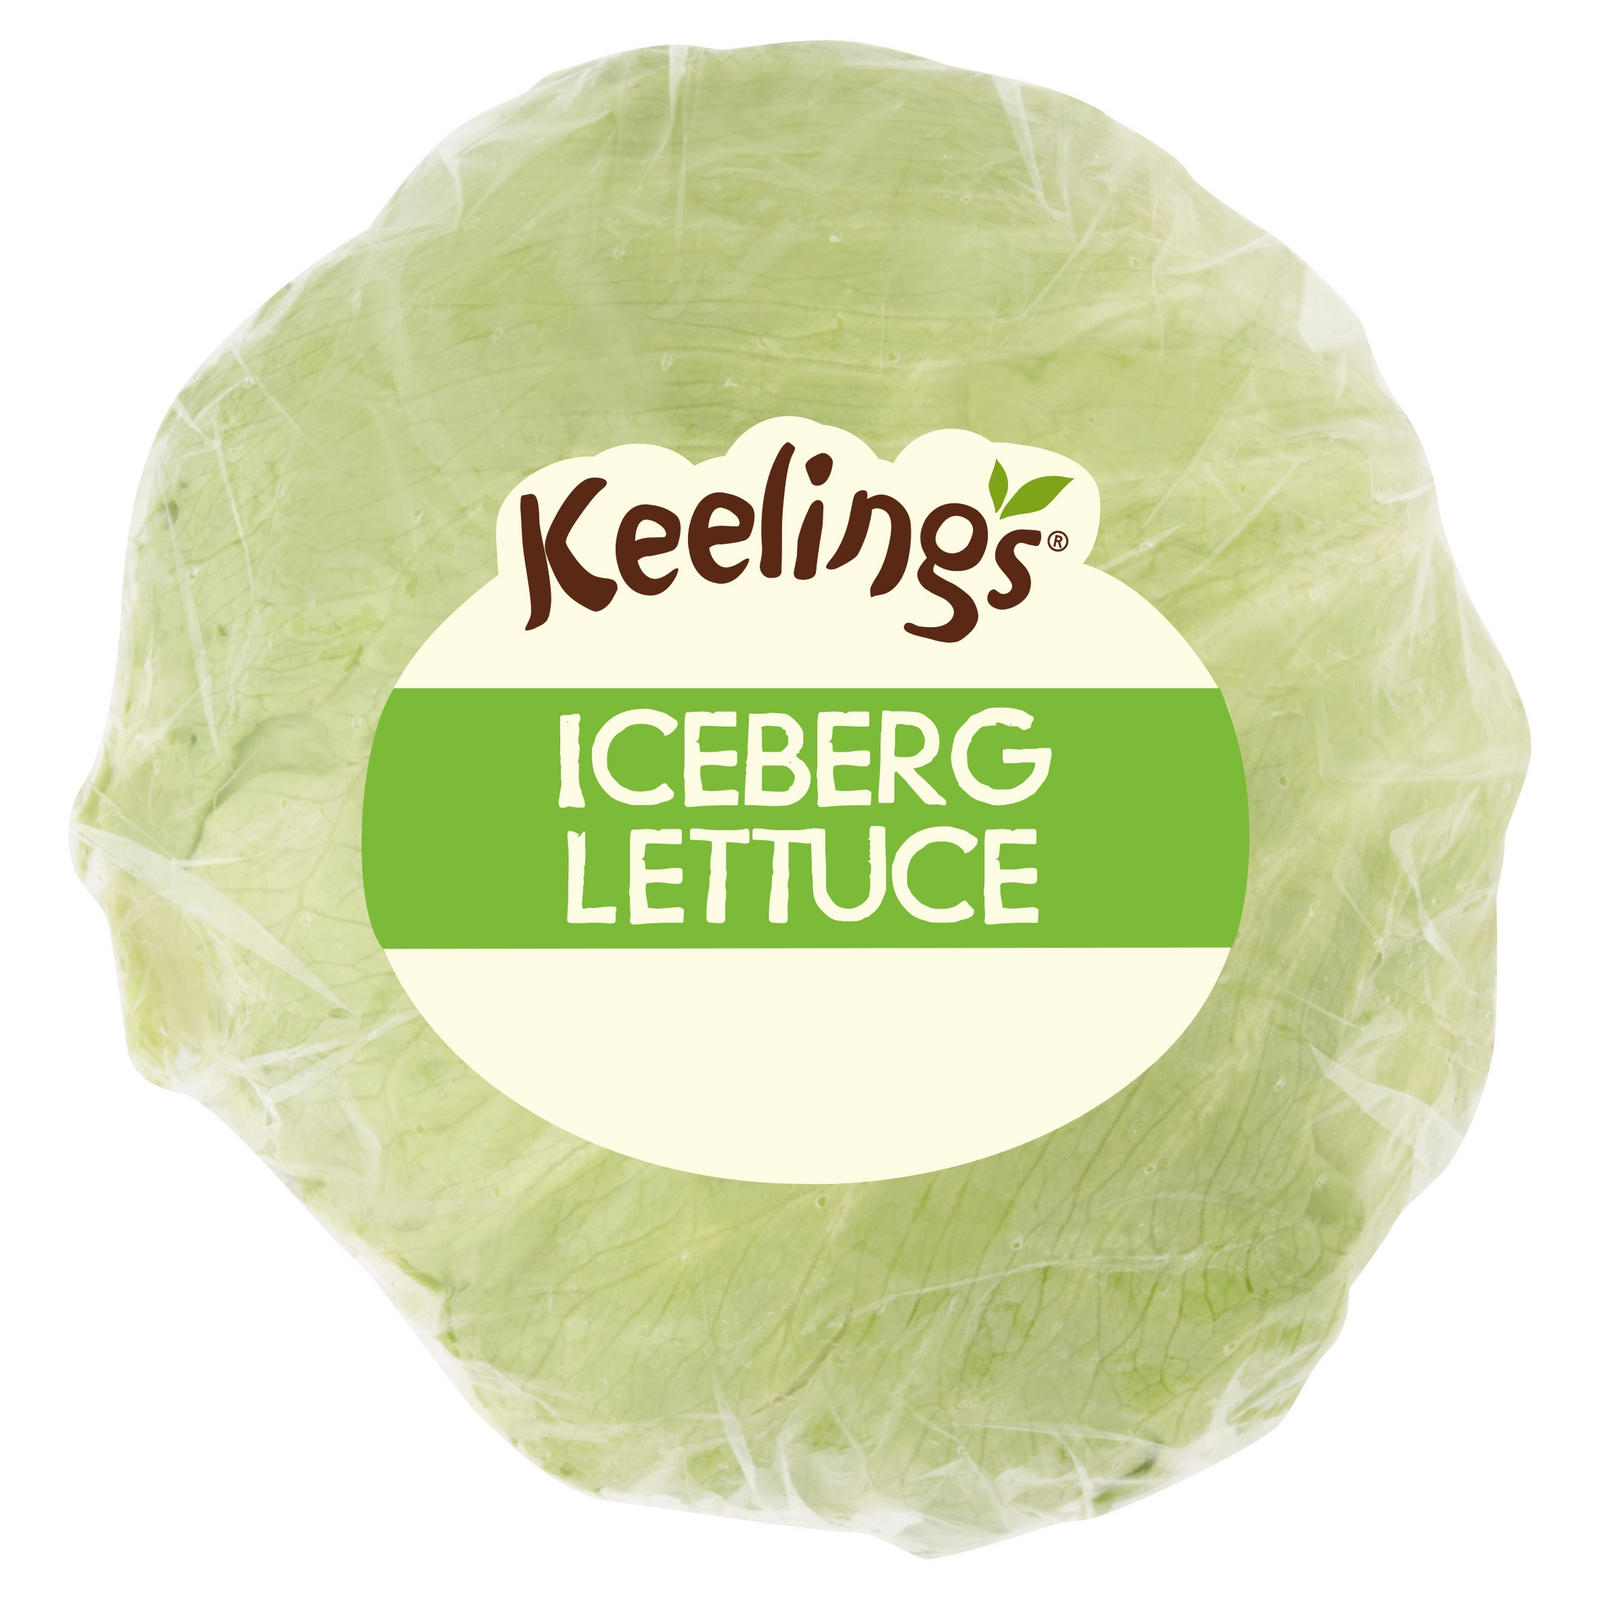 Keelings Iceberg Lettuce